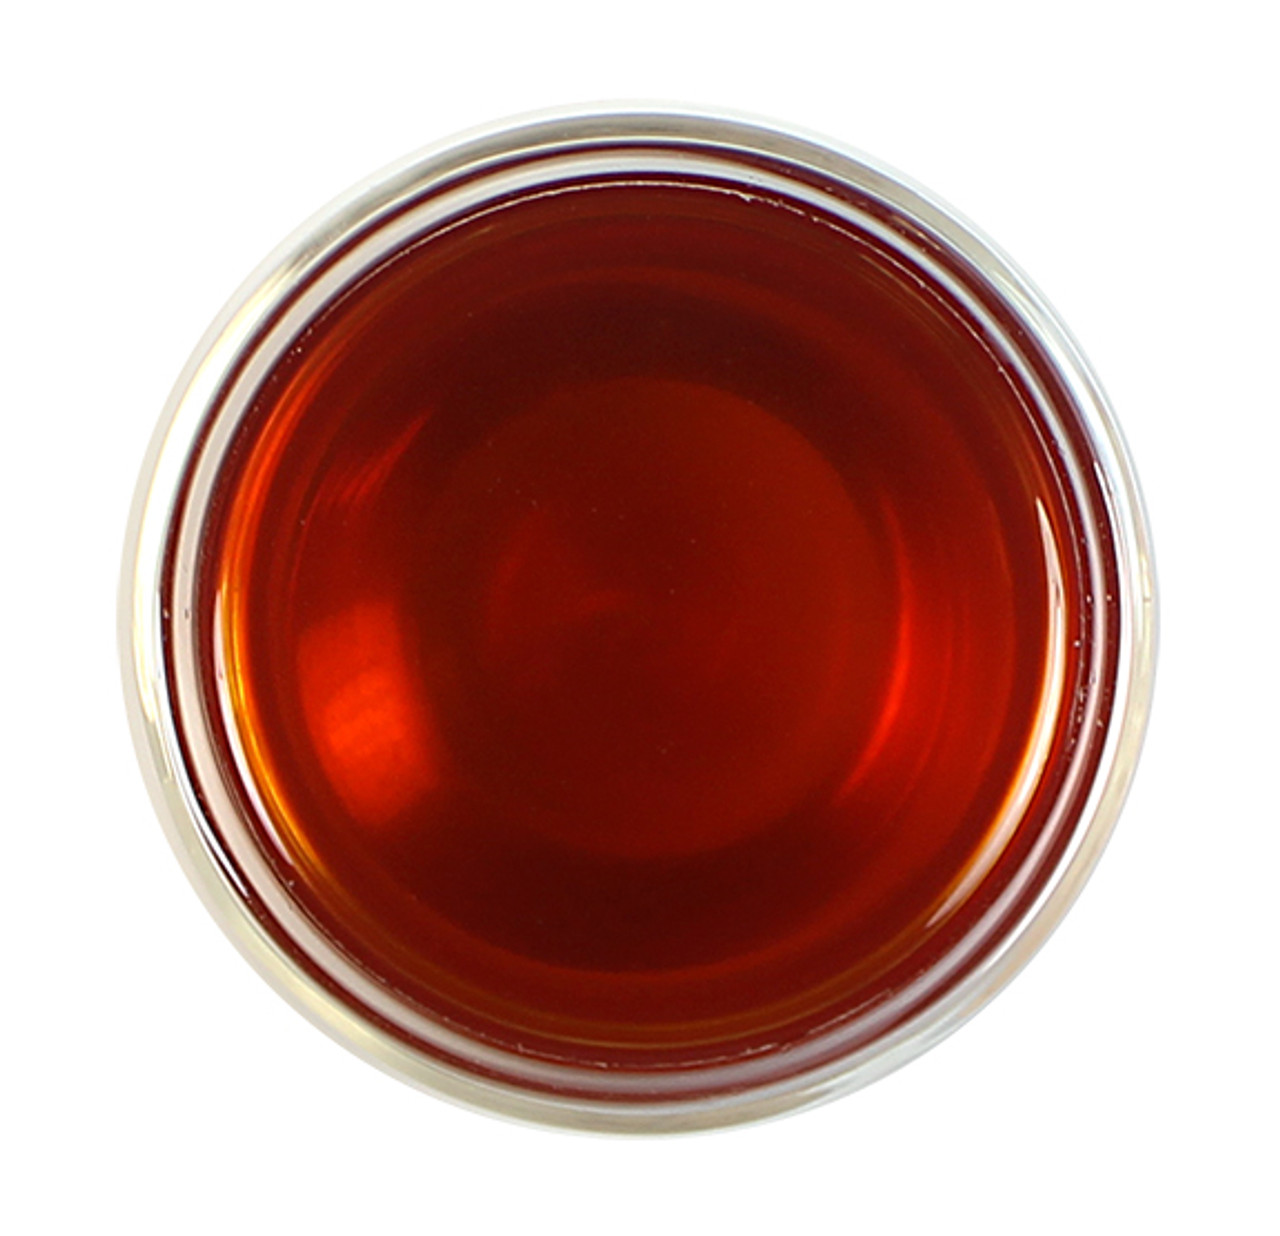 rock creek red chai rooibos tea brewed